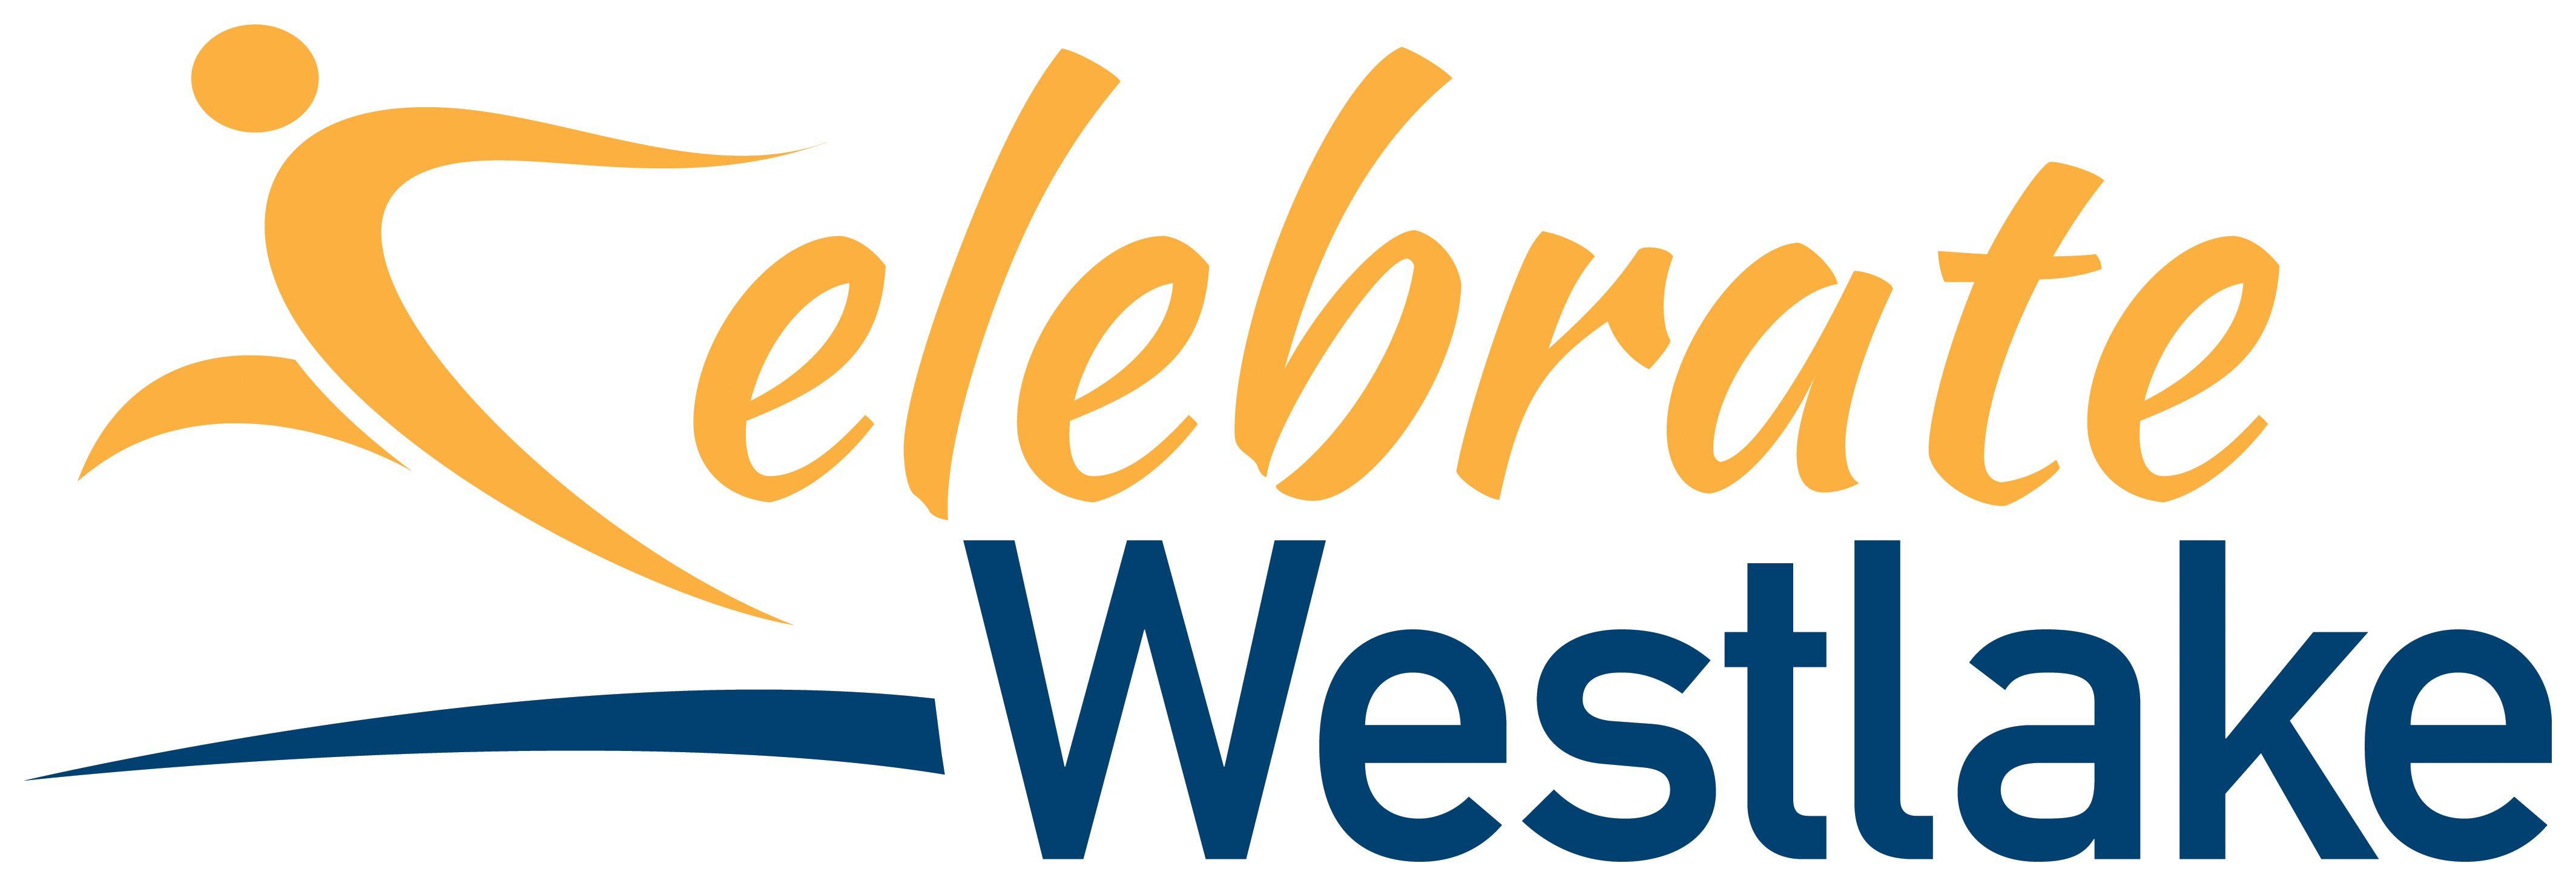 Westlake Logo - Celebrate Westlake Logo 2017_RGB - The Villager Newspaper Online